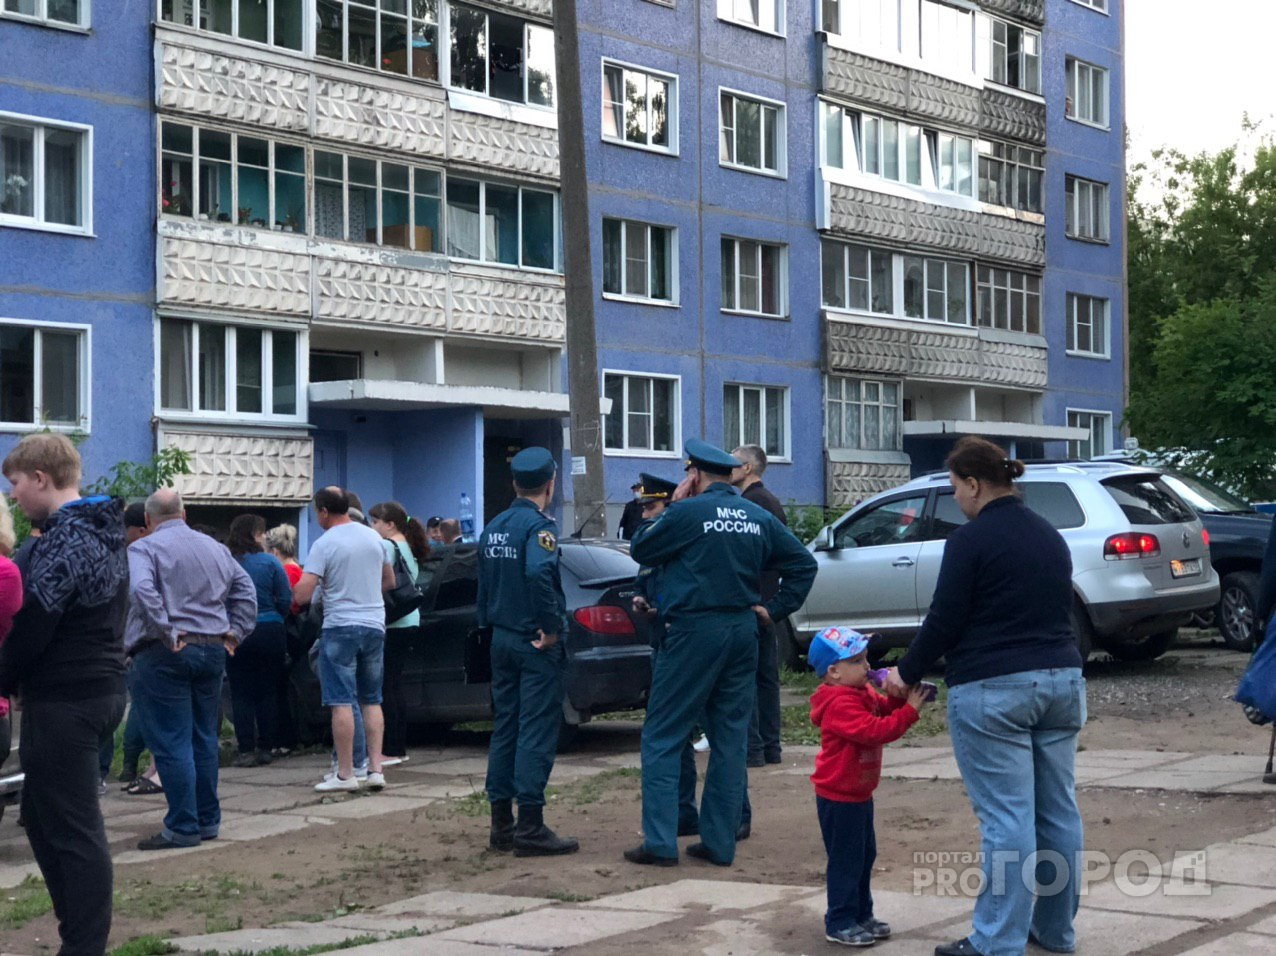 "Сосед увидел горящие лохмотья сорочки на женщине и начал тушить": жильцы о ЧП в доме на Орджоникидзе